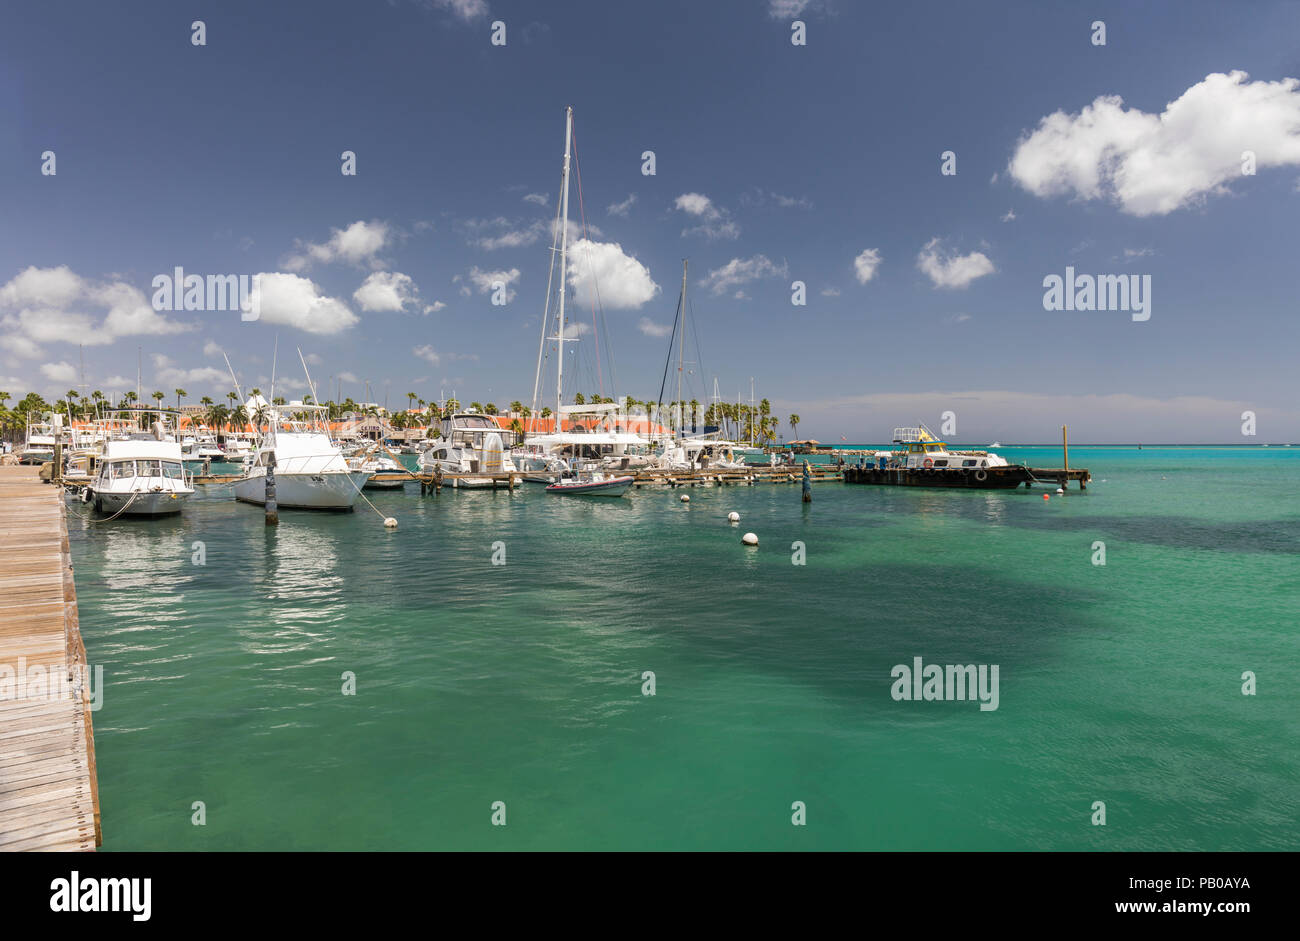 Barche ormeggiate nel mare turchese dei Caraibi nella zona del porto di Oranjestad, Aruba, Caraibi Foto Stock